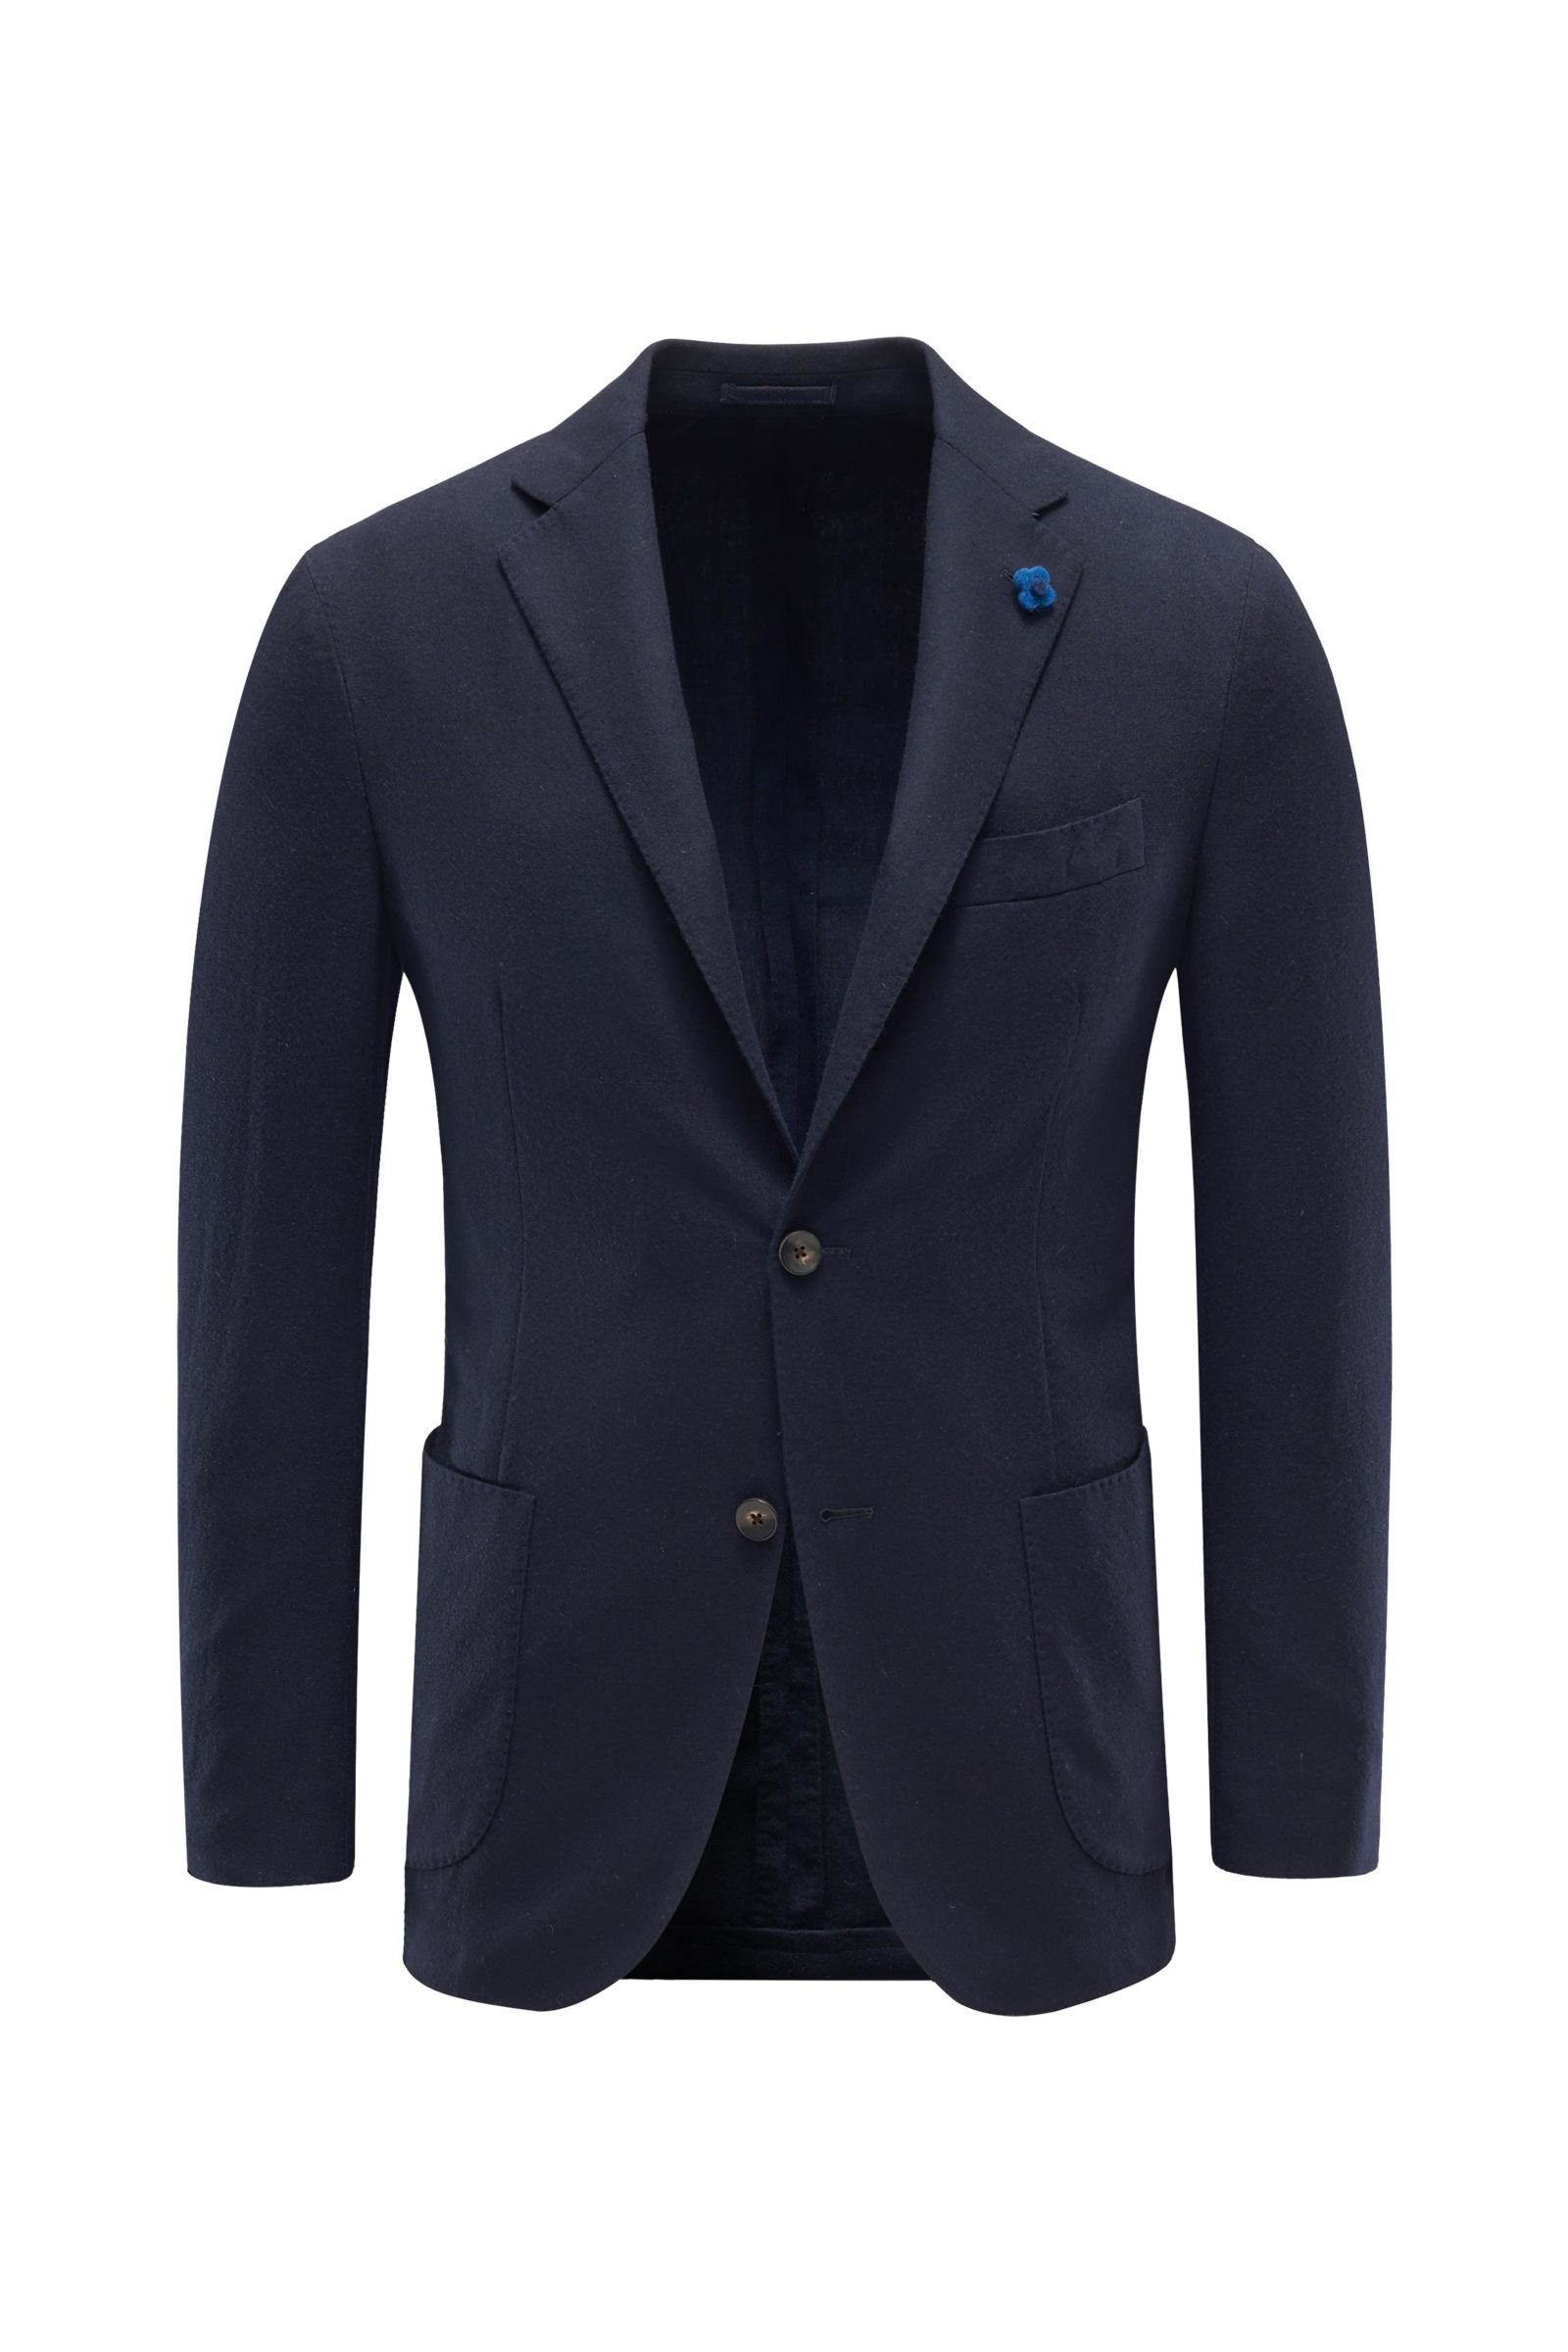 Cashmere smart-casual jacket dark navy